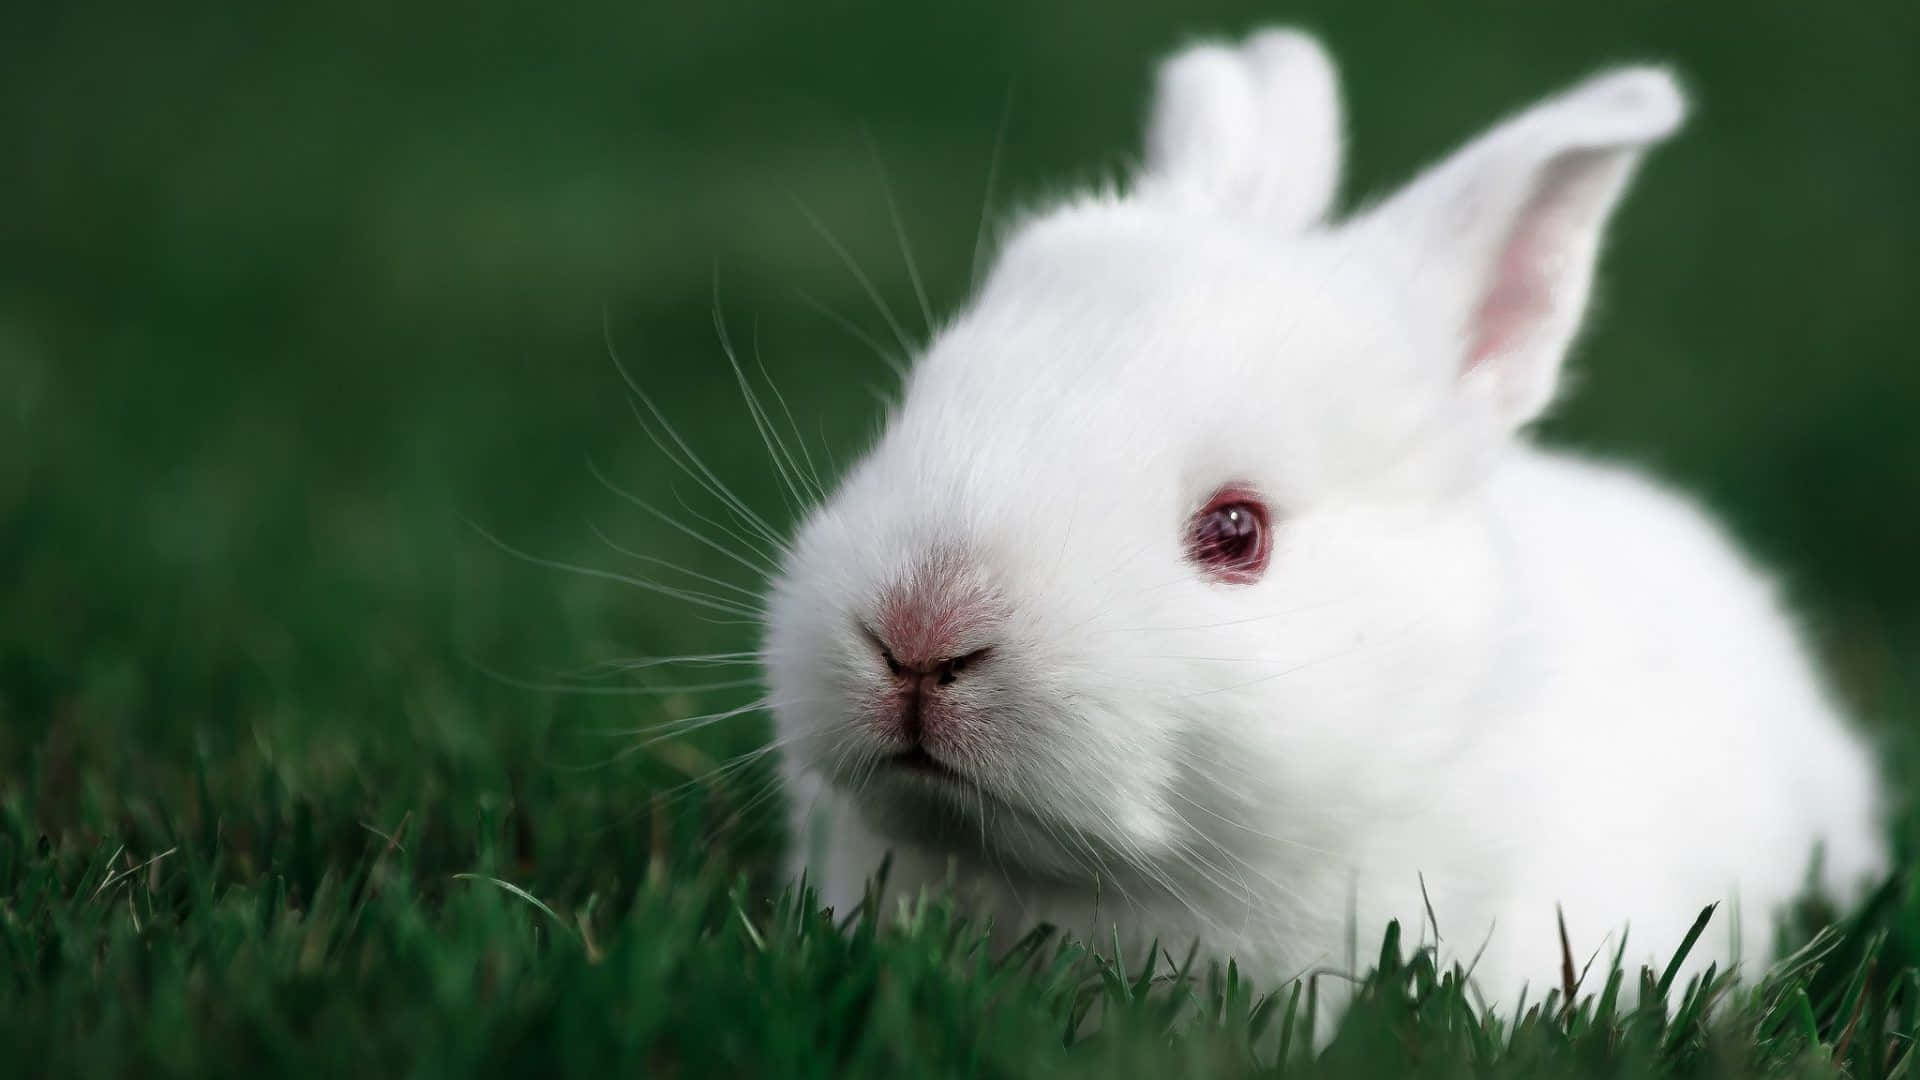 A cute bunny hopping towards the camera